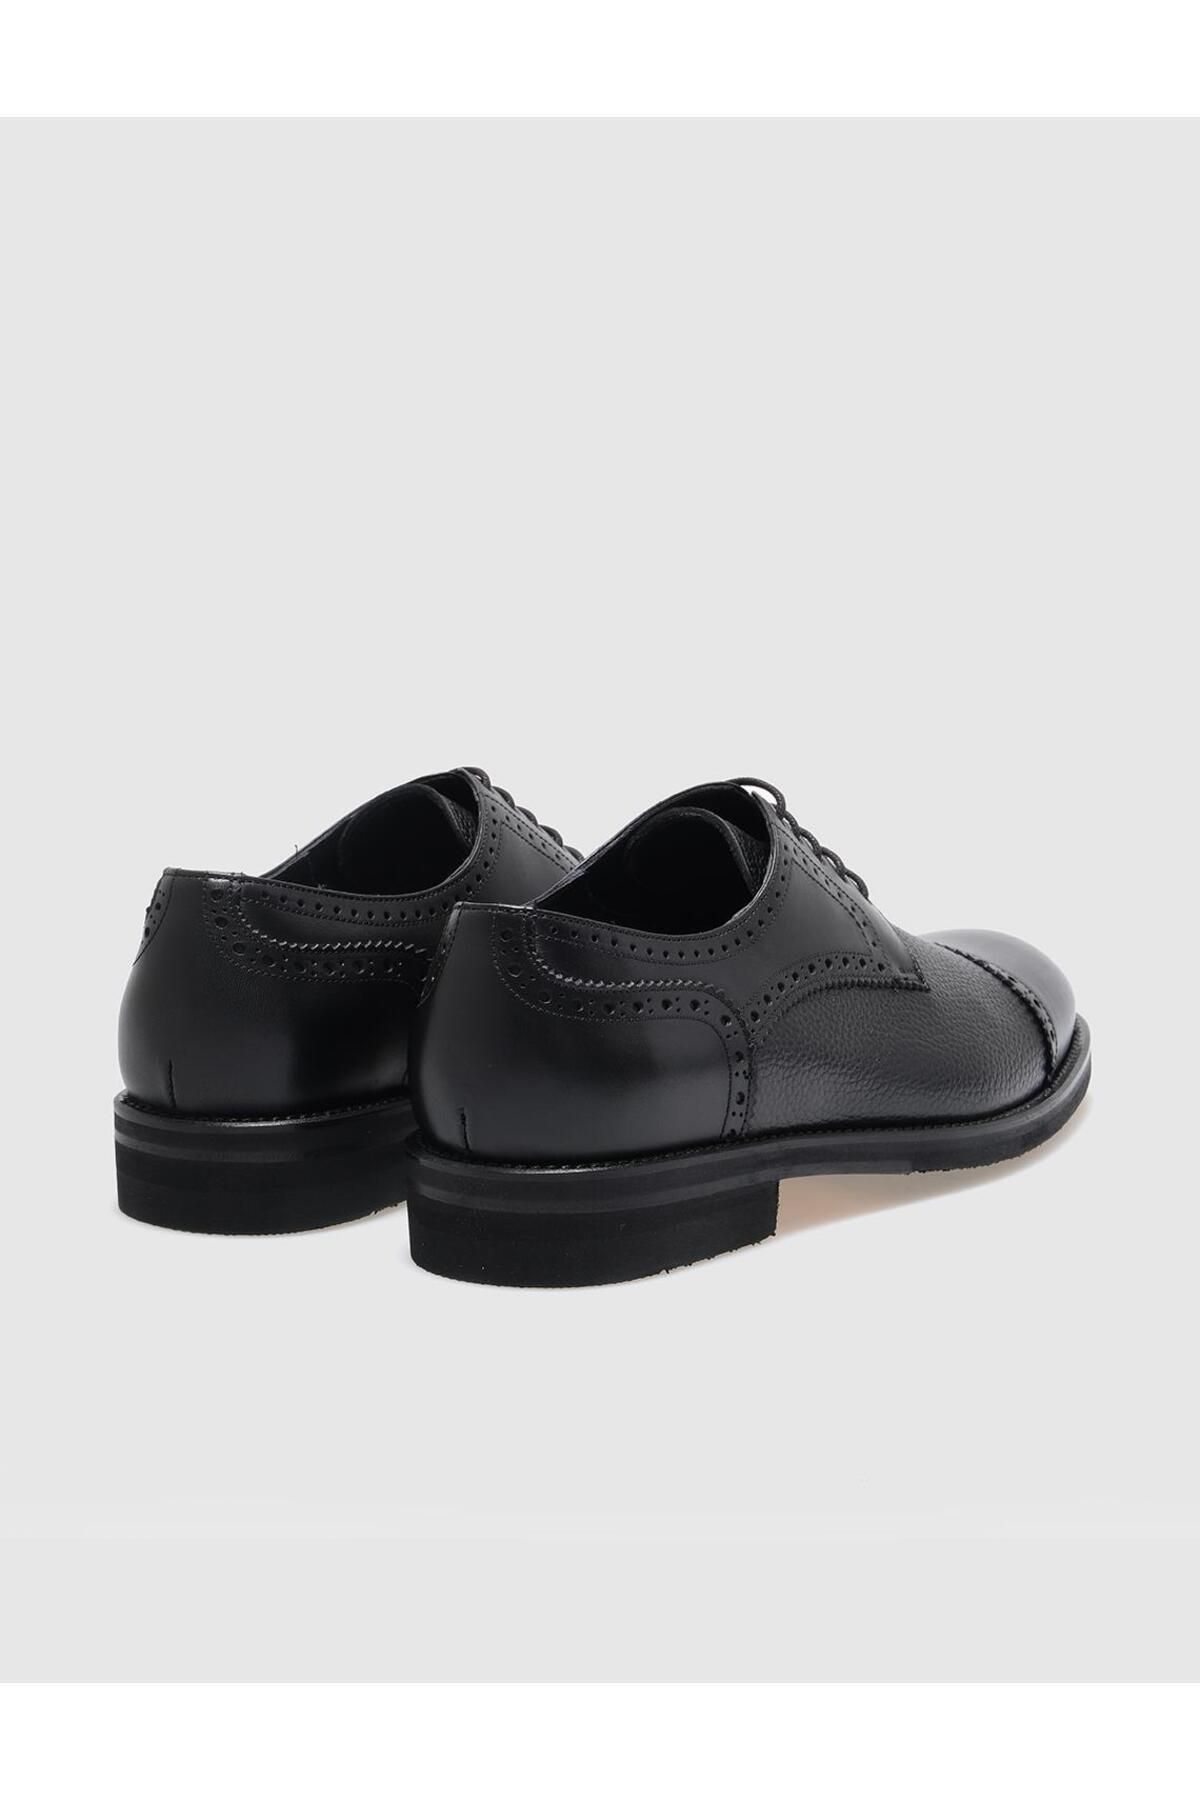 Cabani کفش های کلاسیک توری سیاه چرمی